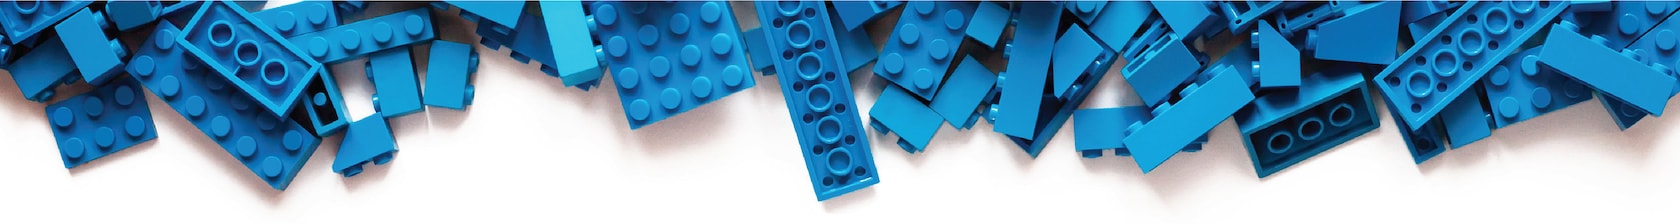 Laboratoire scientifique / laboratoire - ensemble personnalisé en briques  LEGO - cadeau parfait pour les enfants et les adultes, les chimistes, les